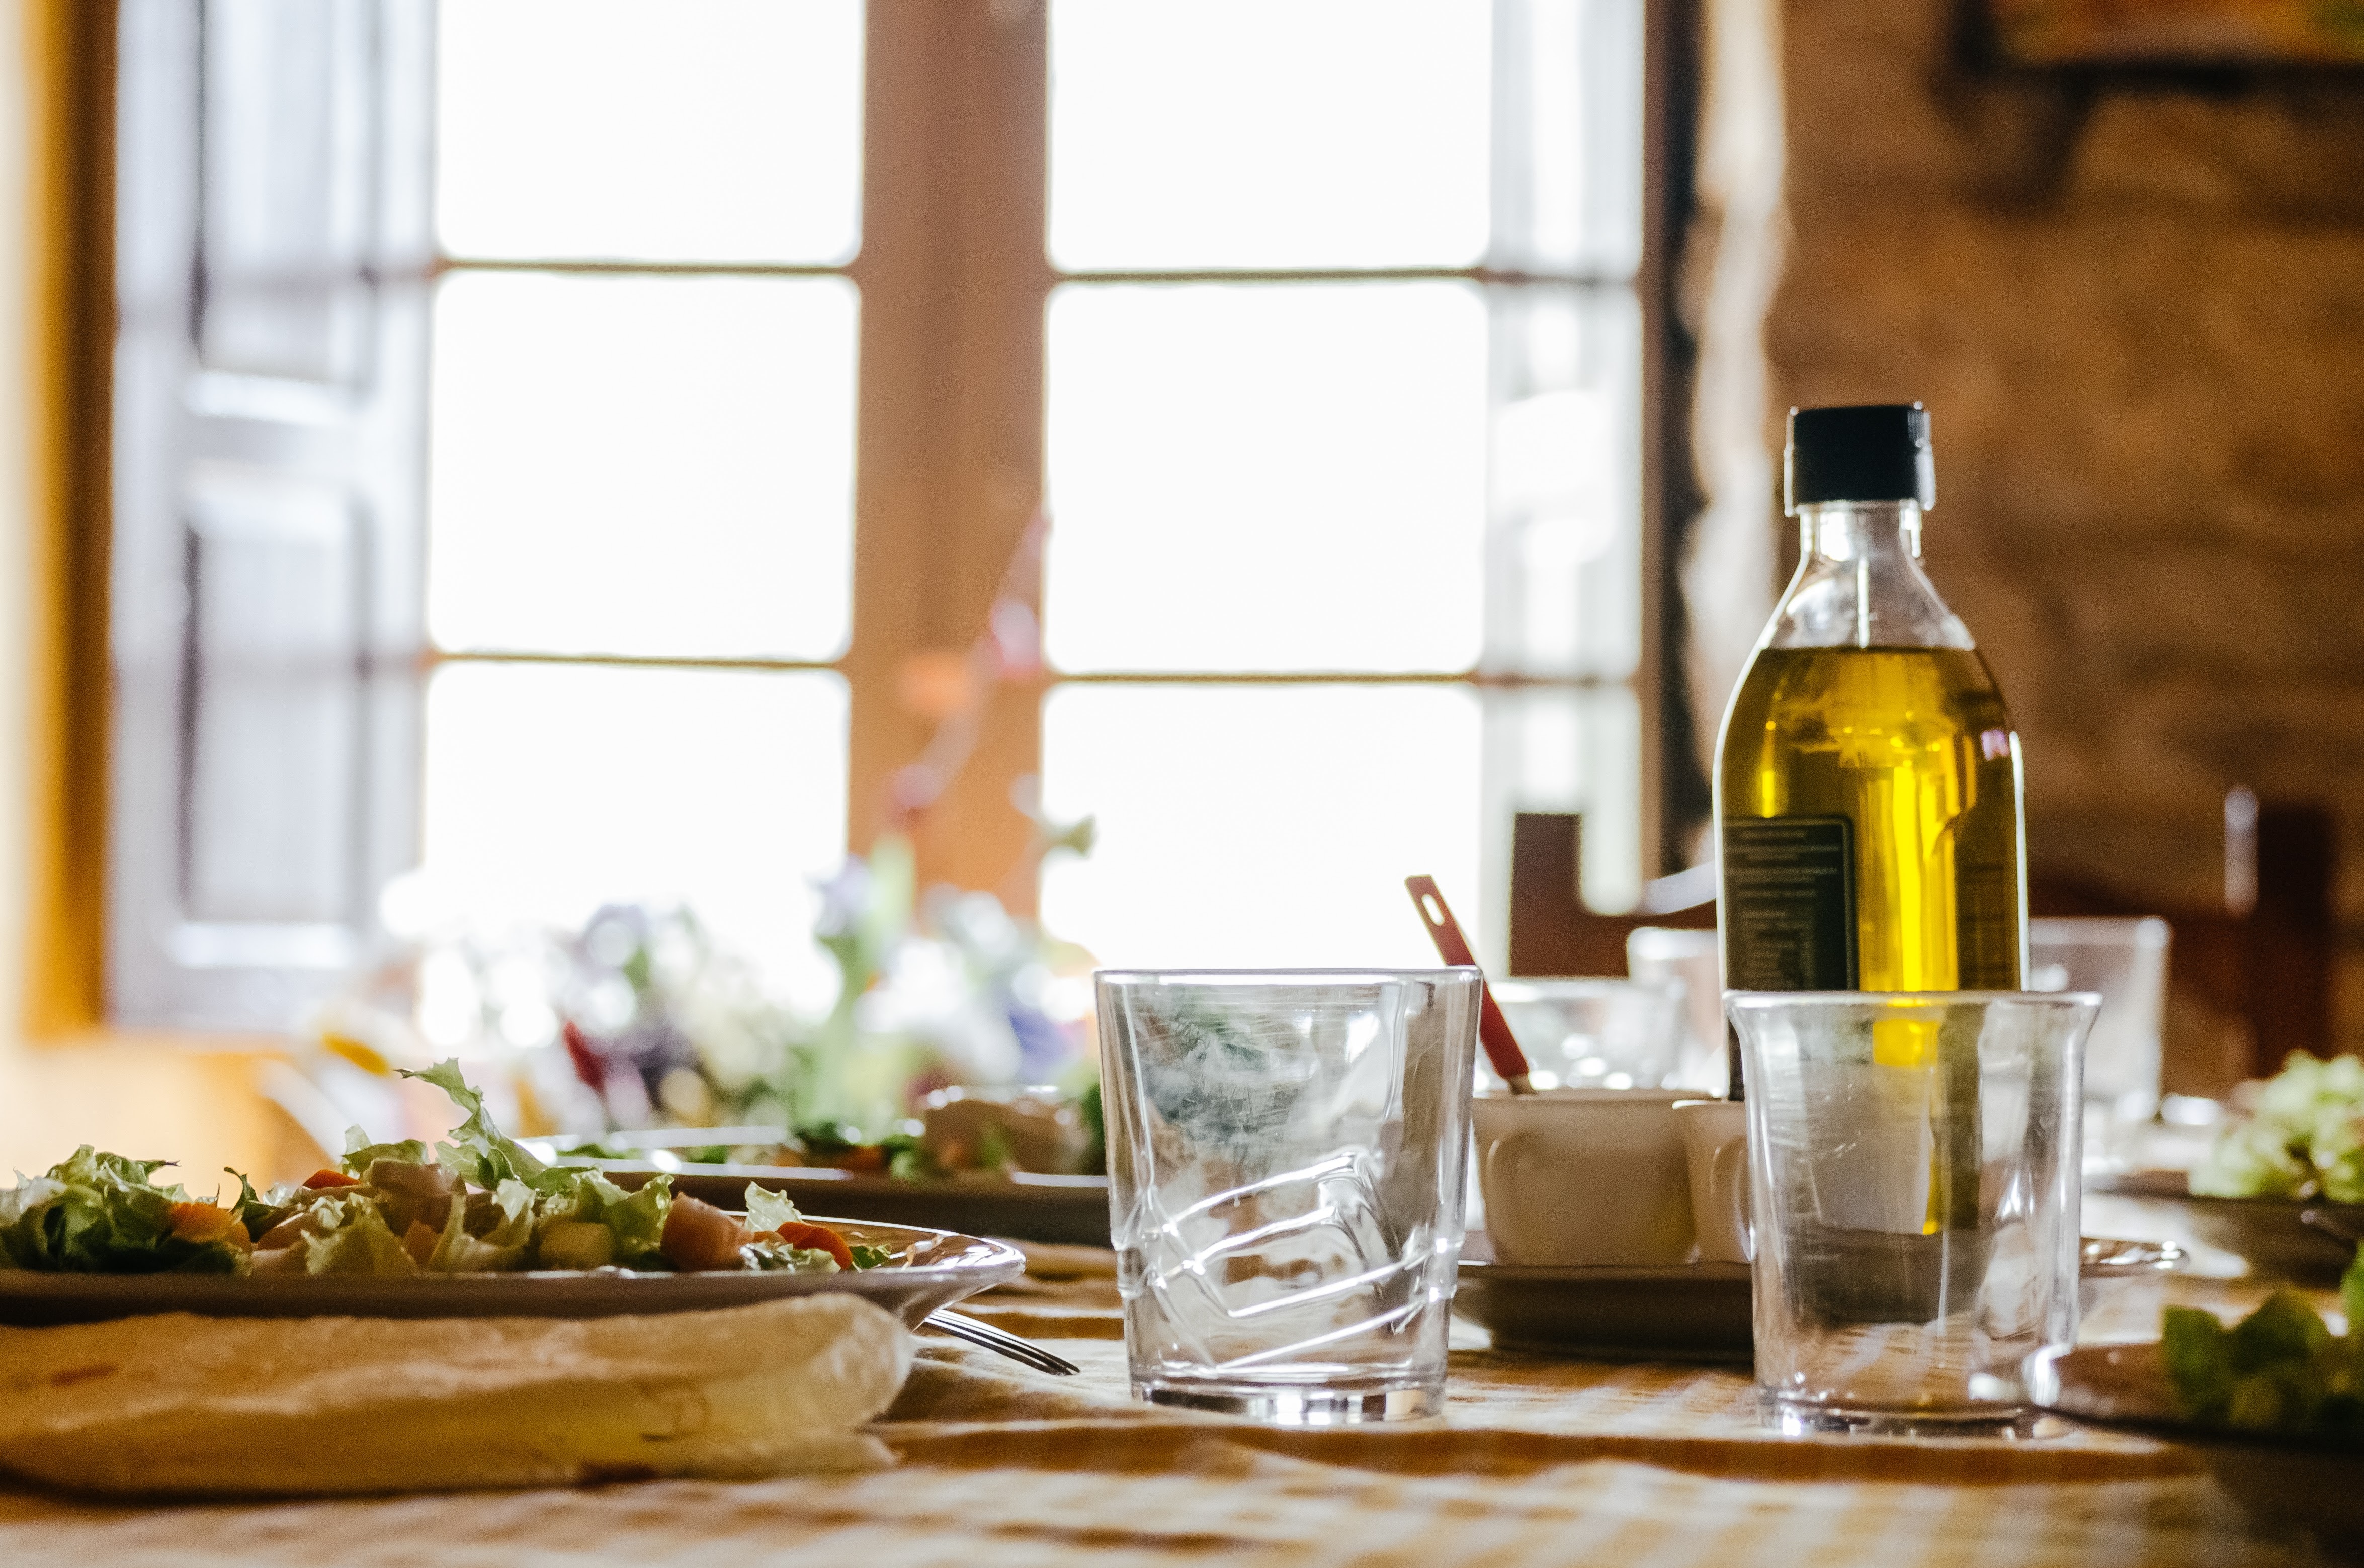 La dieta mediterránea con aceite de oliva virgen extra reduce la necesidad de medicación en diabéticos